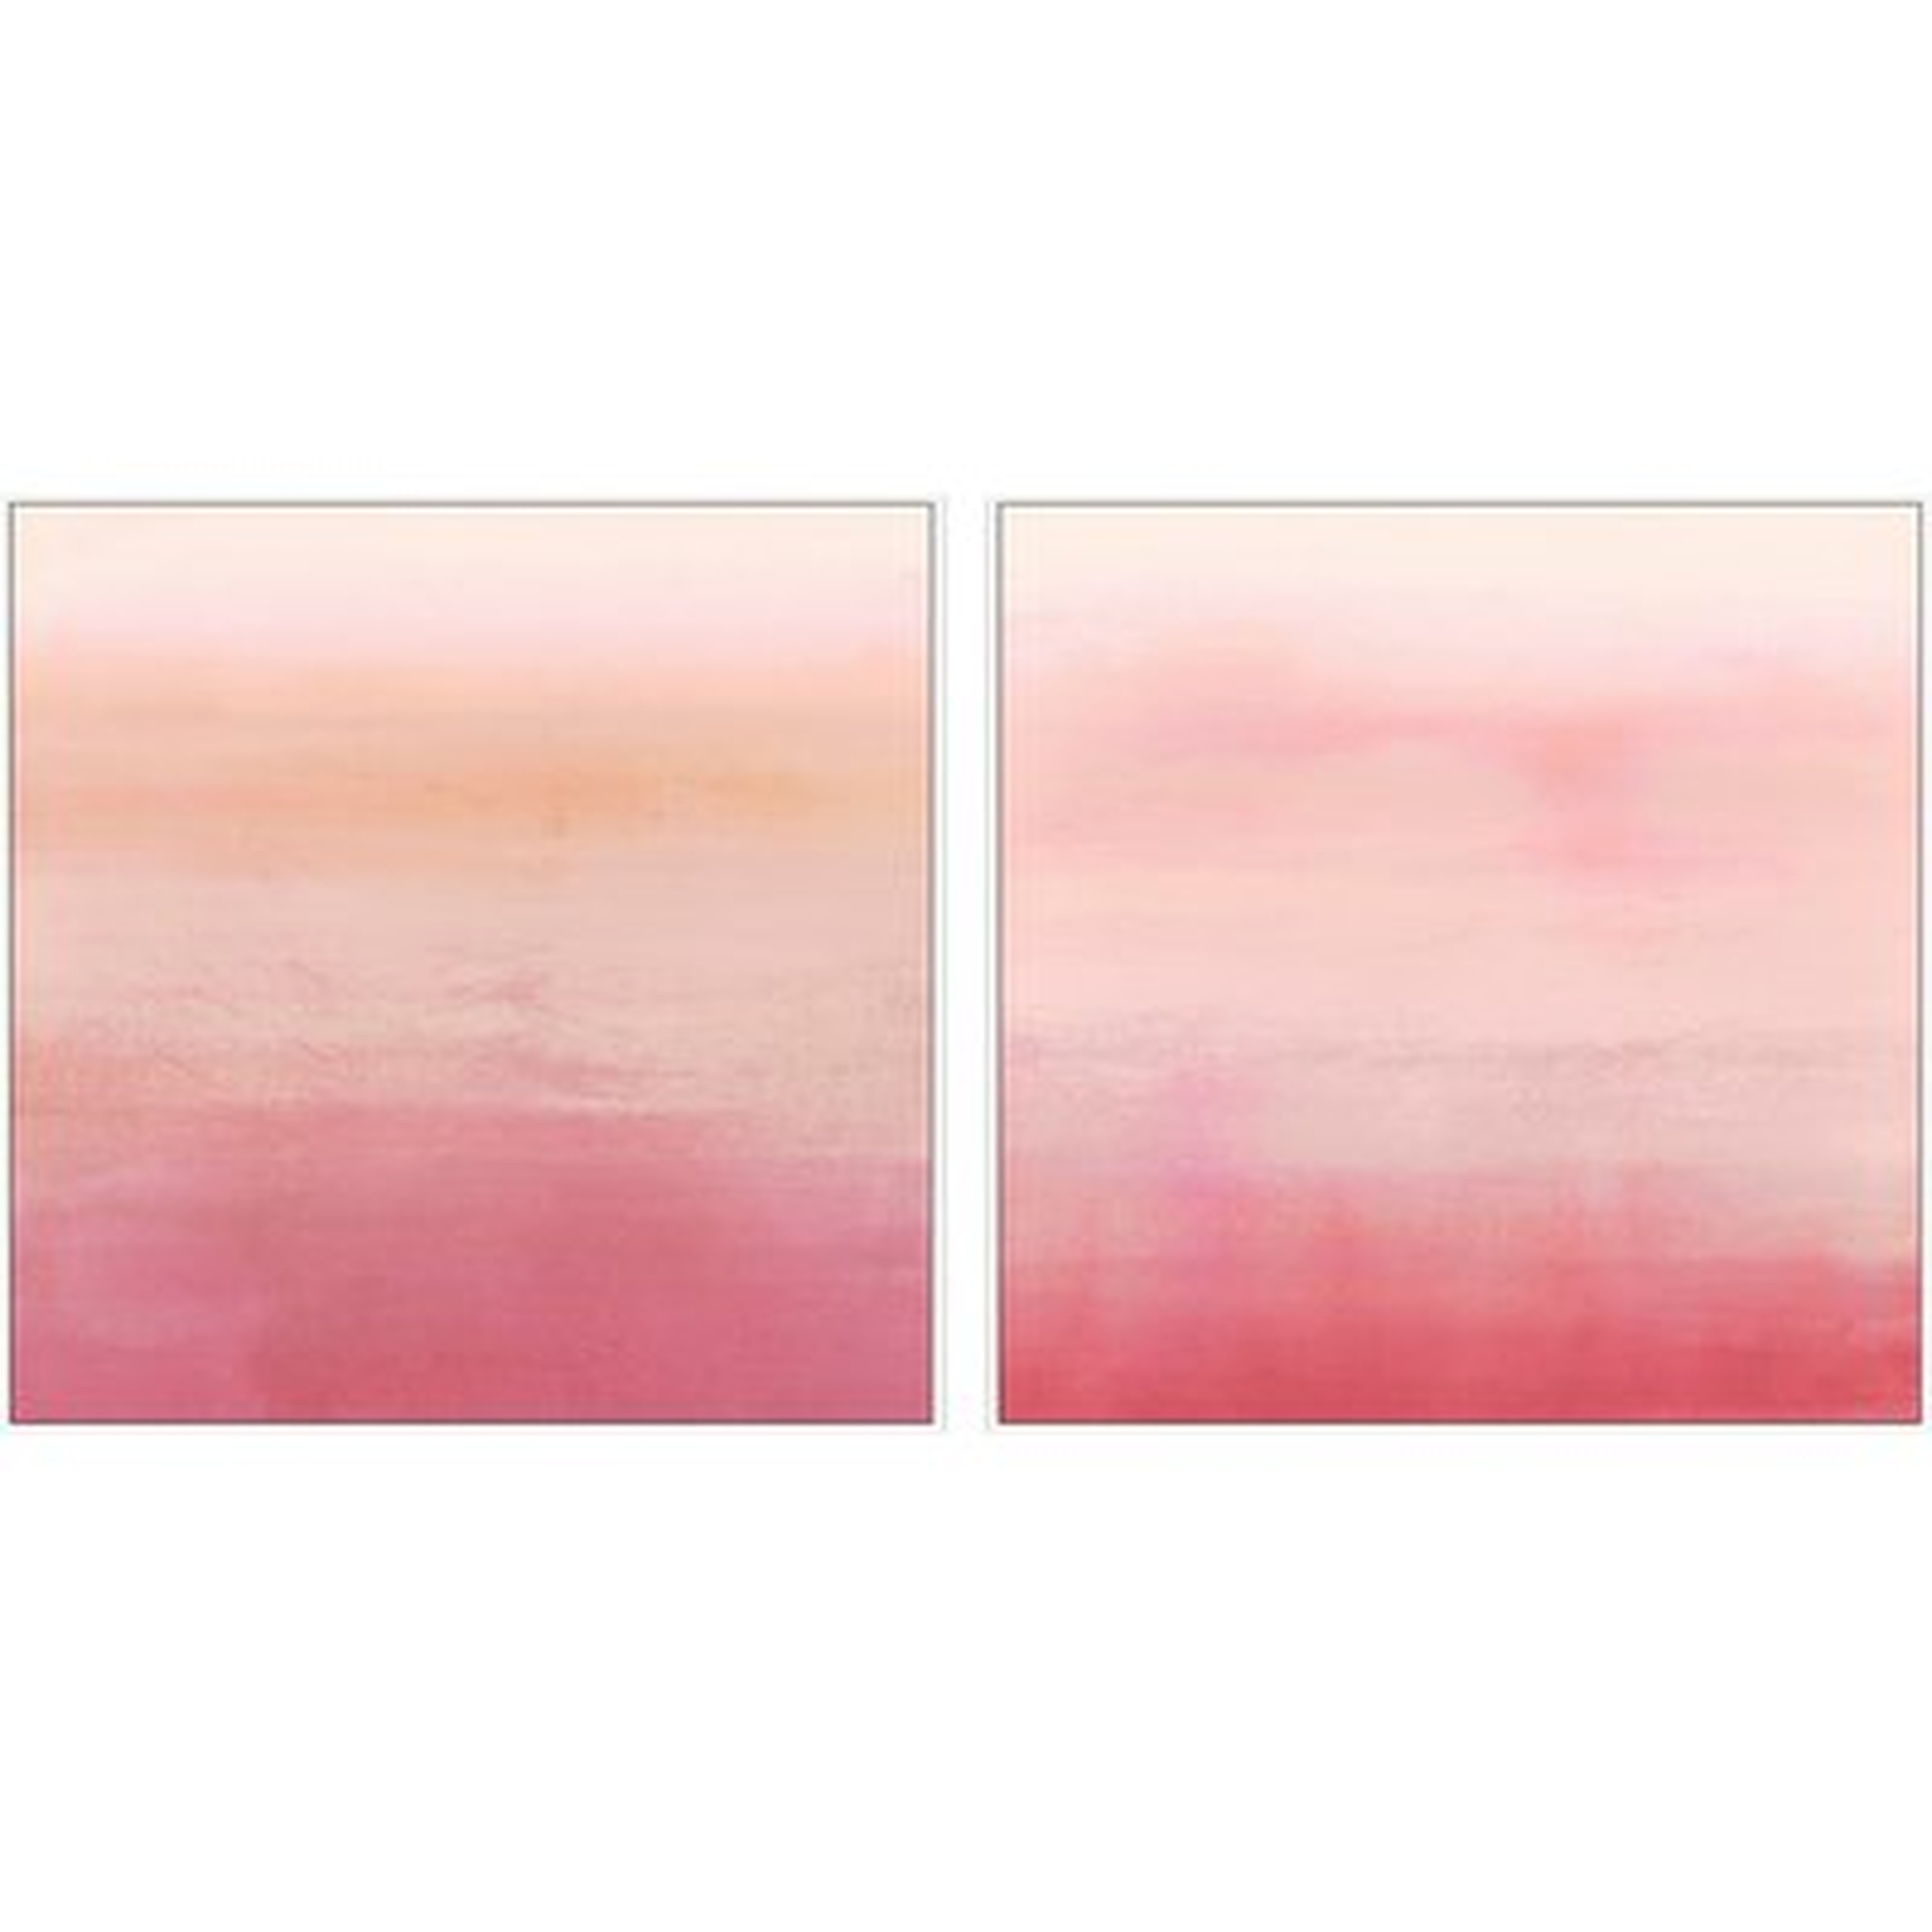 'Pink Ombré' 2 Piece Framed Acrylic Painting Print Set on Canvas - Wayfair